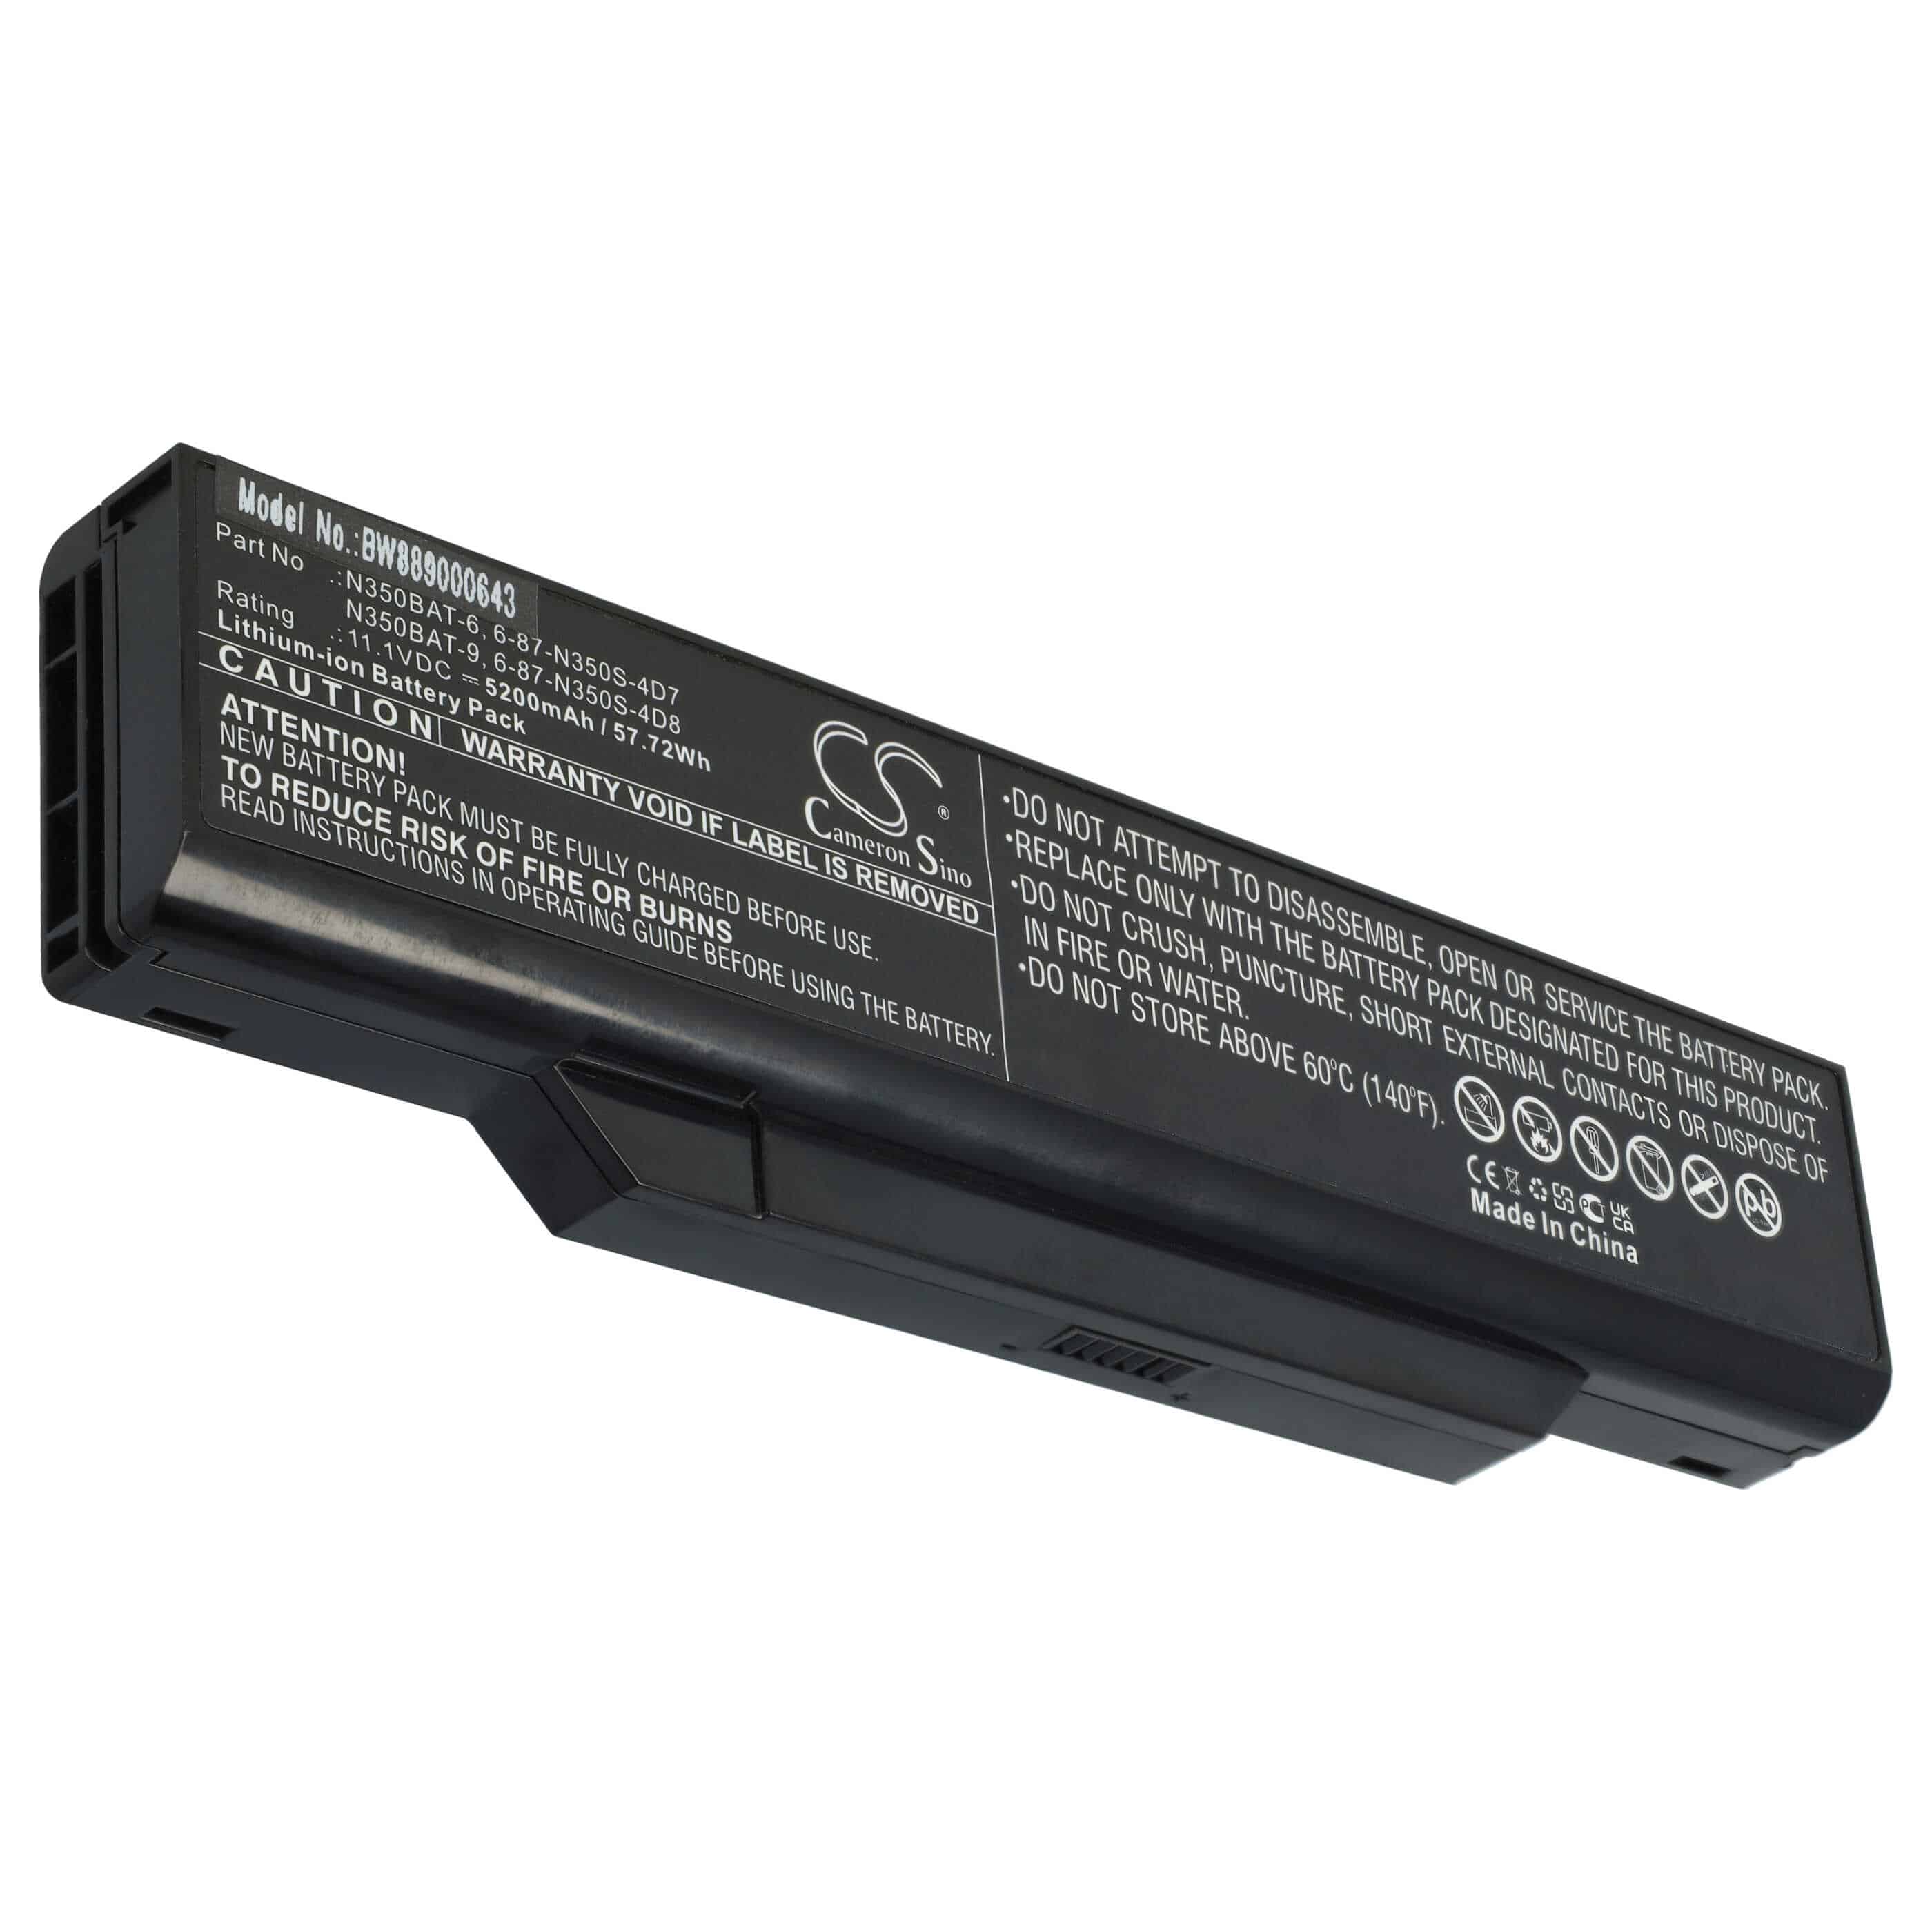 Batterie remplace Clevo 6-87-N350S-4D7, 6-87-N350S-4D8 pour ordinateur portable - 5200mAh 11,1V Li-ion